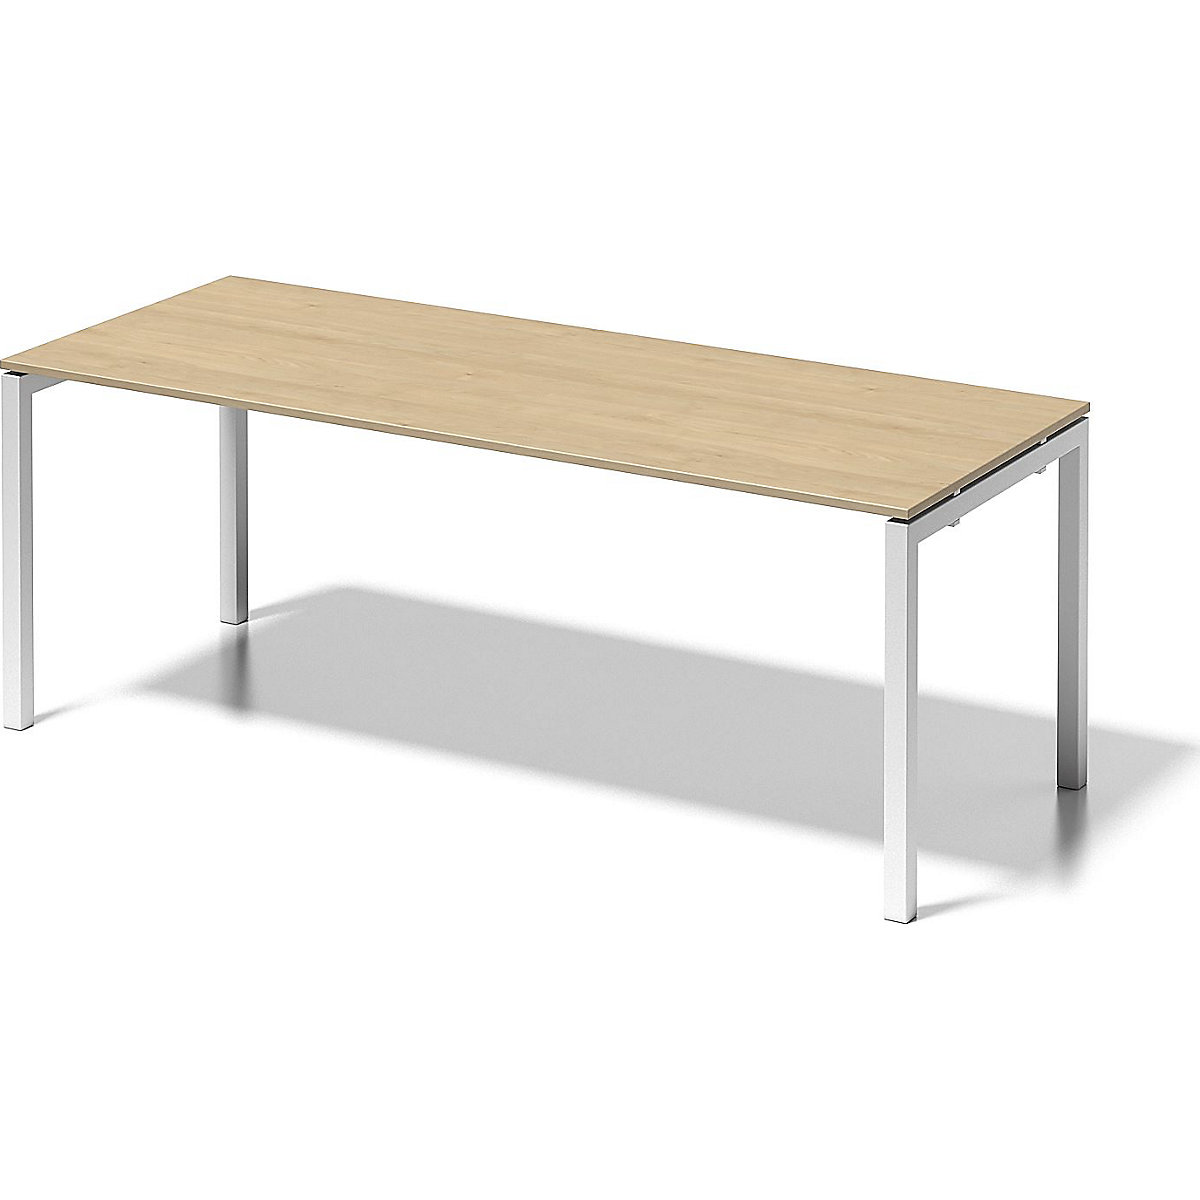 Písací stôl CITO, podstavec v tvare U – BISLEY, v x š x h 740 x 2000 x 800 mm, podstavec biela, doska stola javor-4